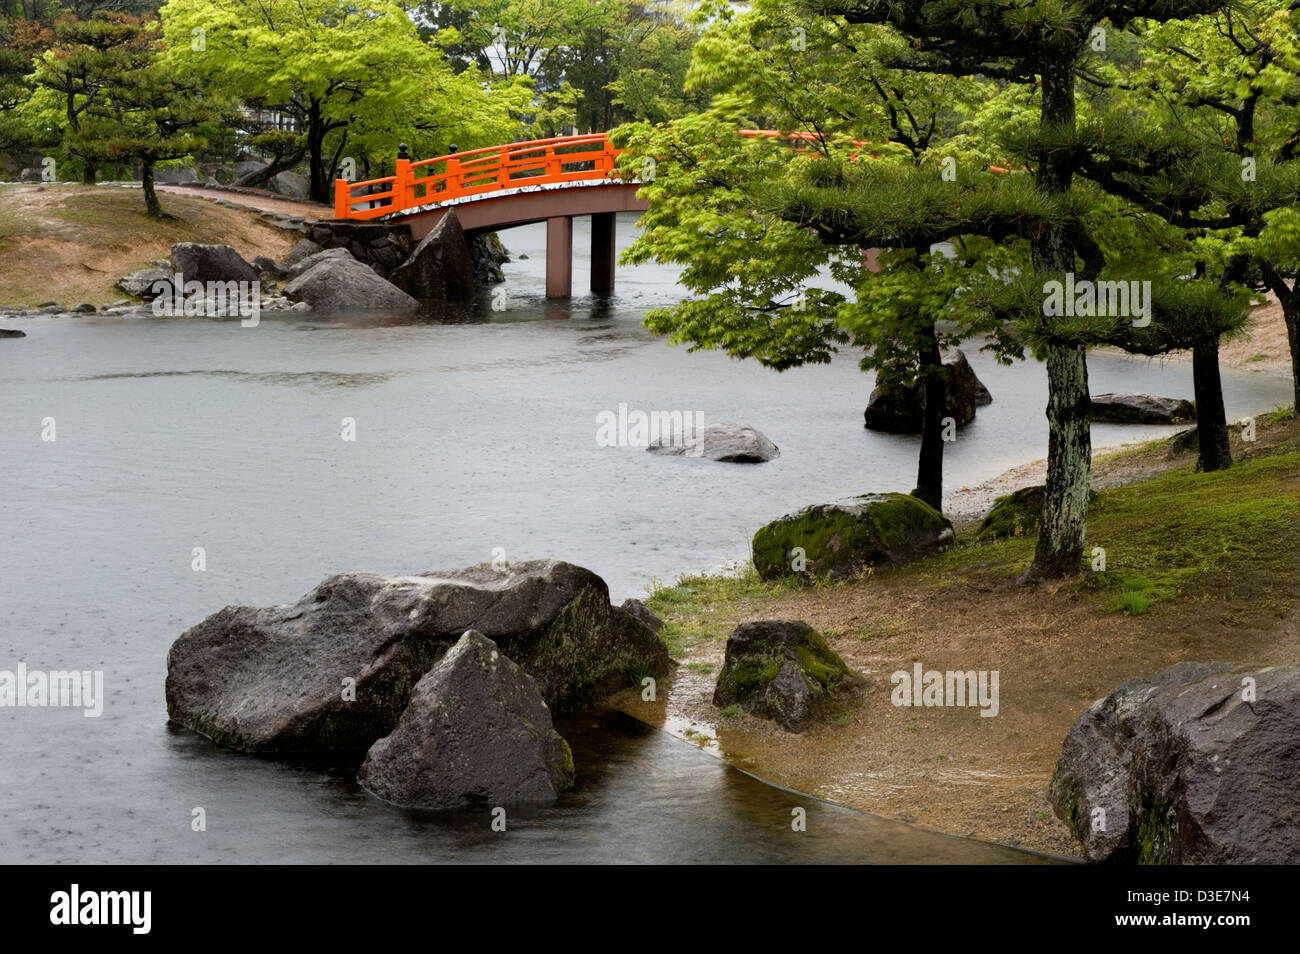 Shikibu Murashiki Koen park orange ponte ad arco oltre il paesaggio giapponese del laghetto in giardino in una piovosa, giornata di primavera. Foto Stock